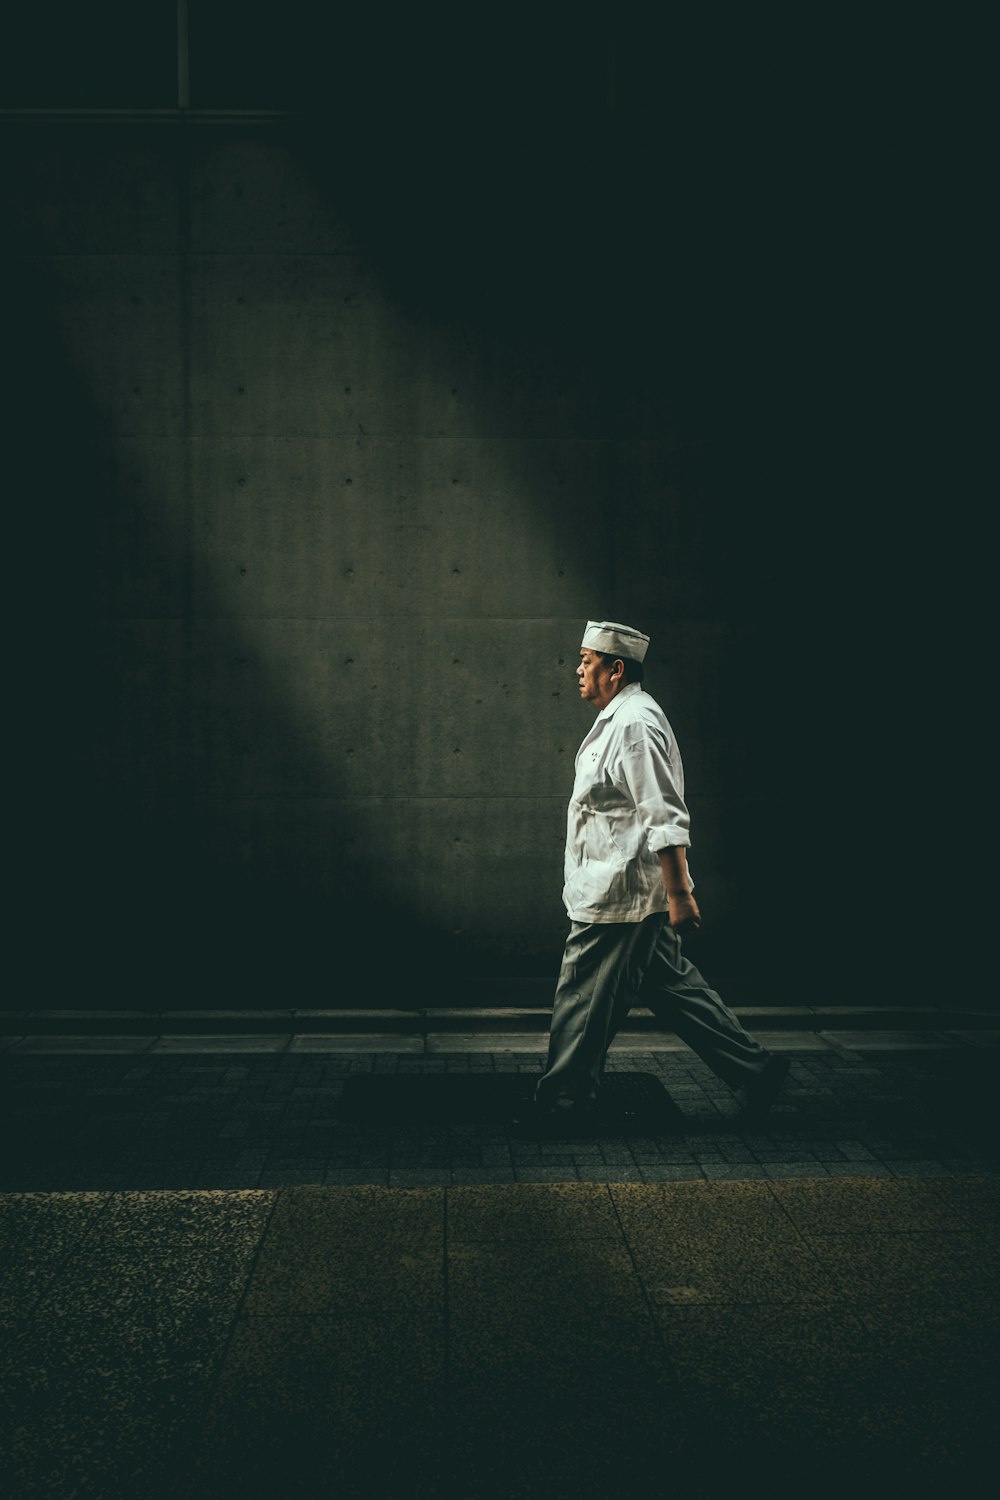 man in white shirt walking on street